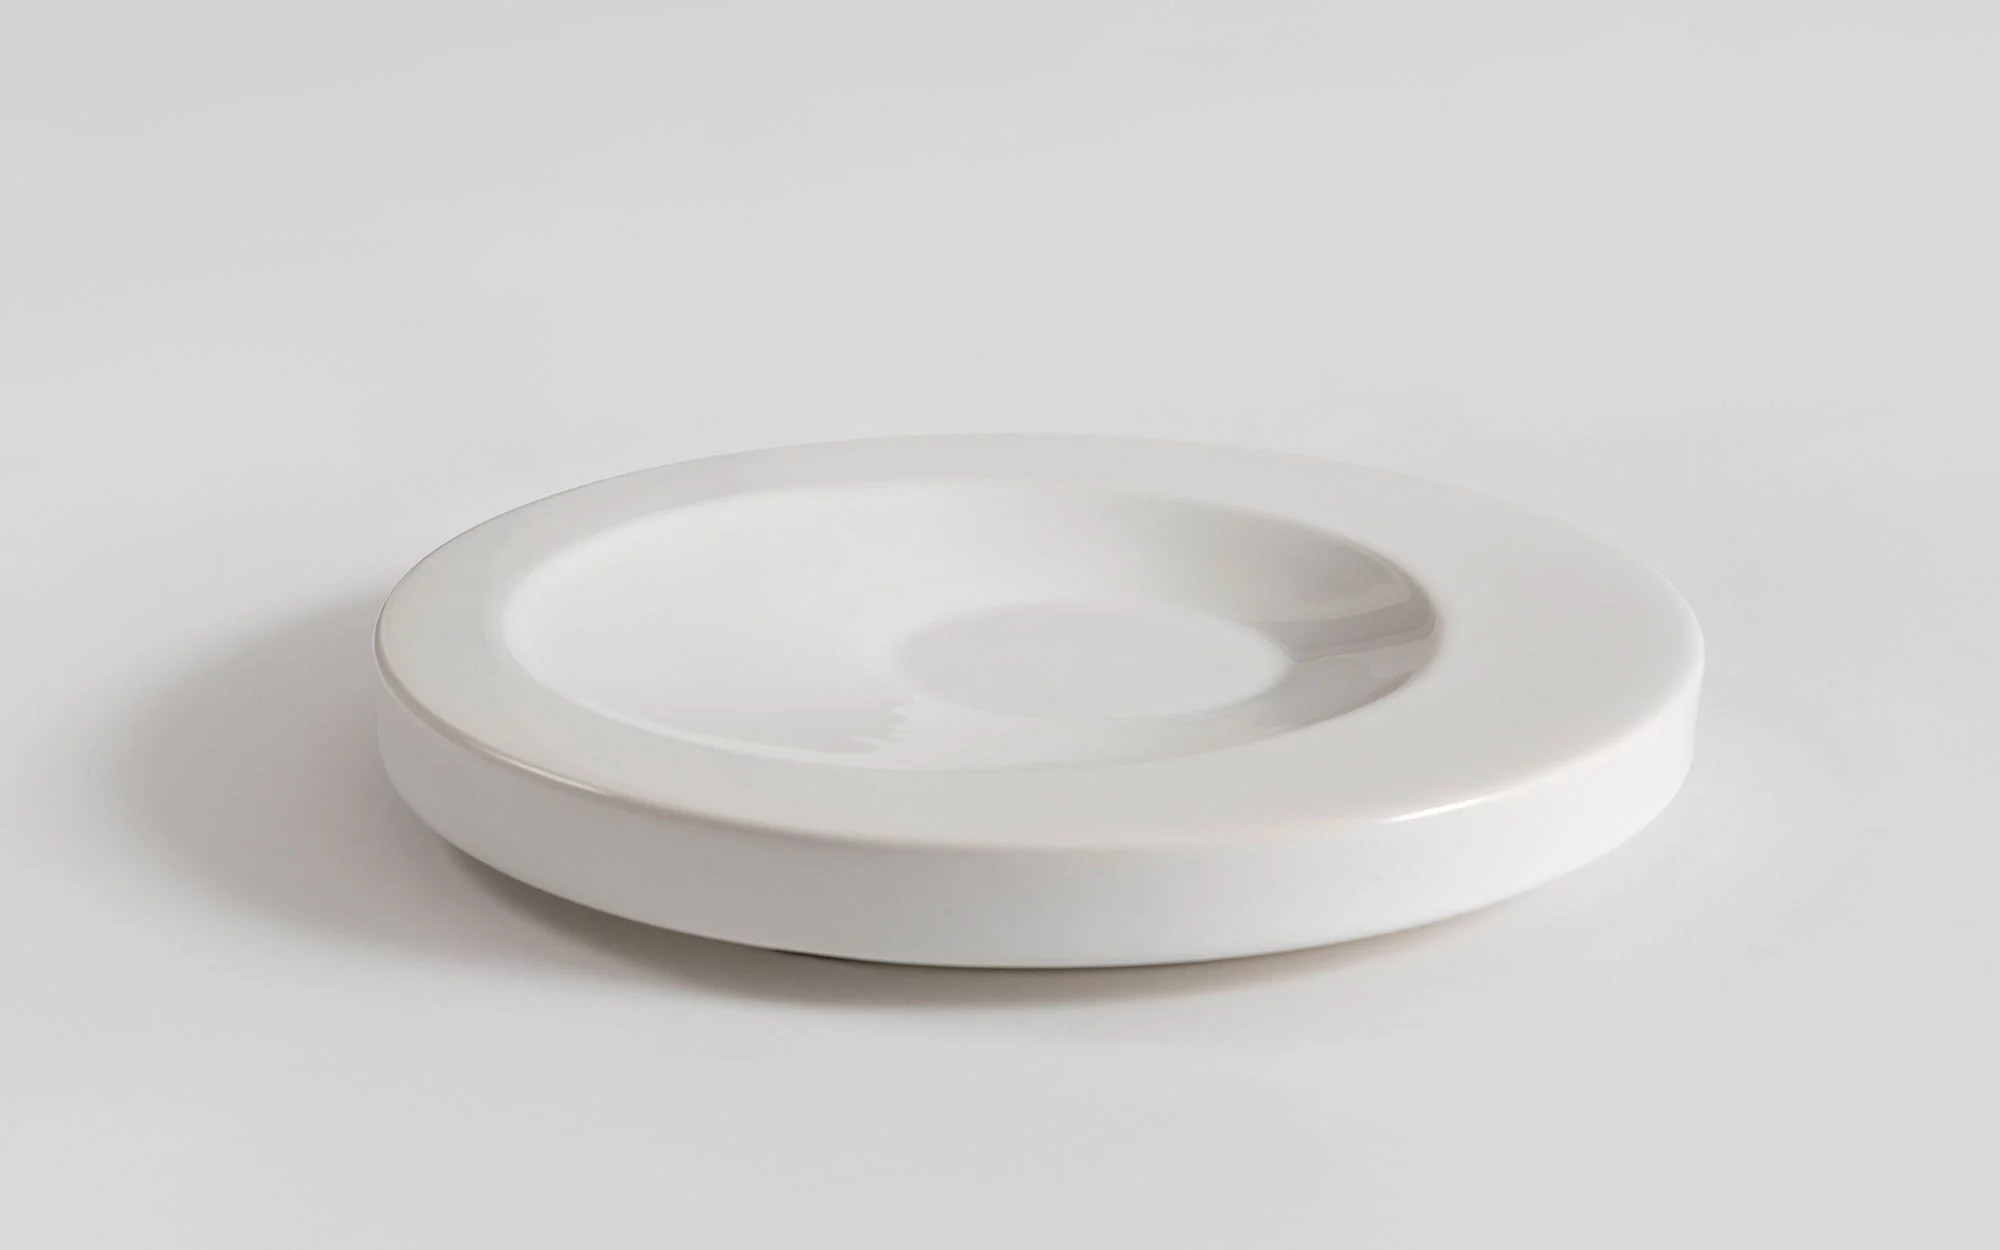 Small Round - Jasper Morrison - object vase- Galerie kreo